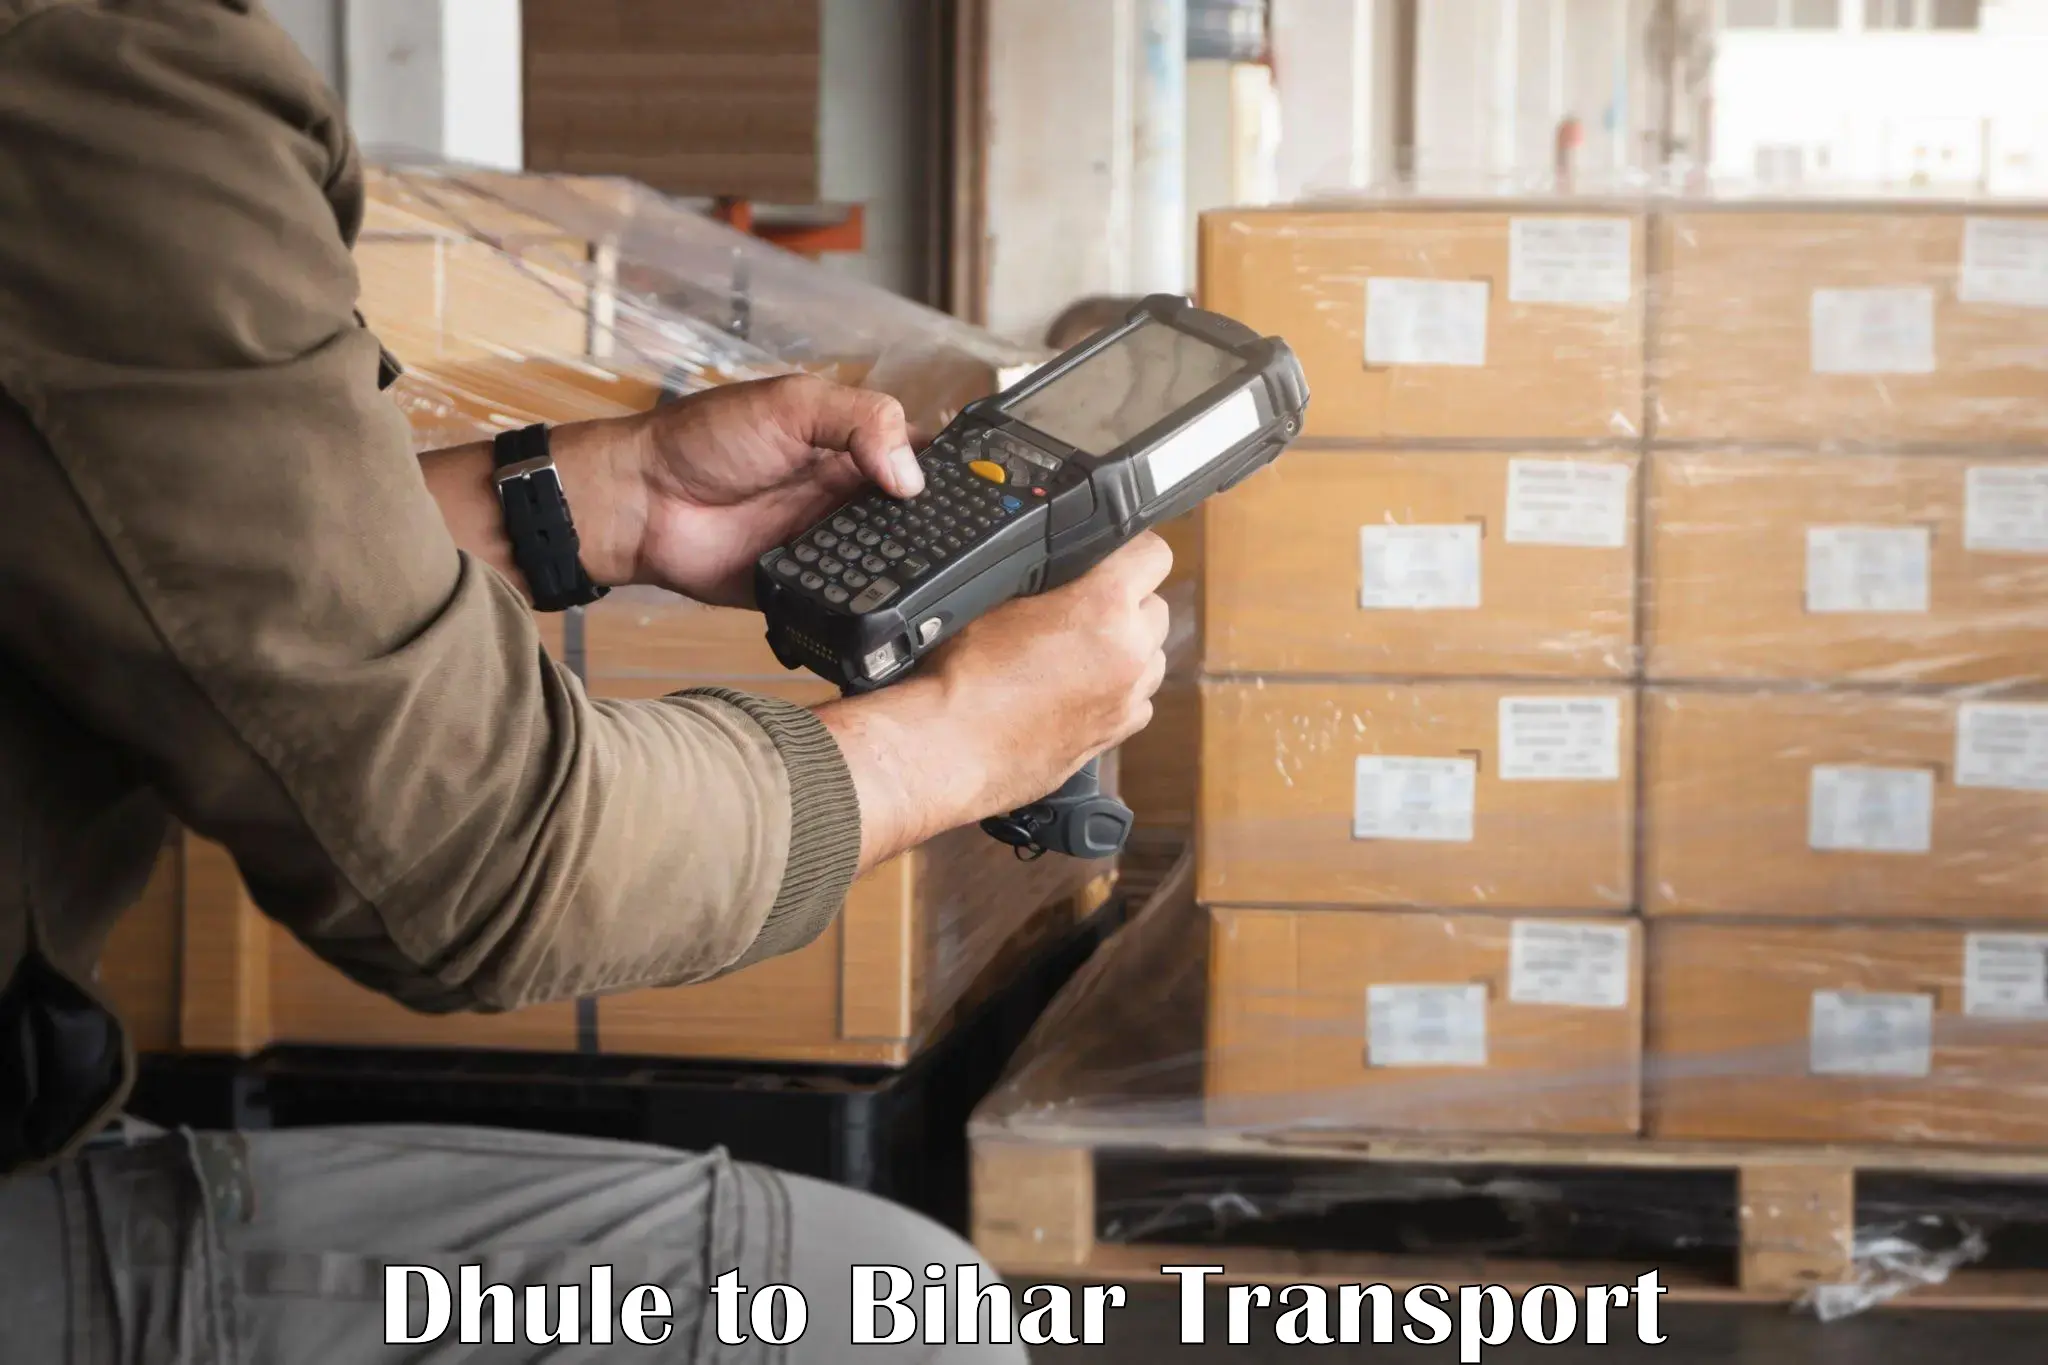 Bike transport service Dhule to Dinara